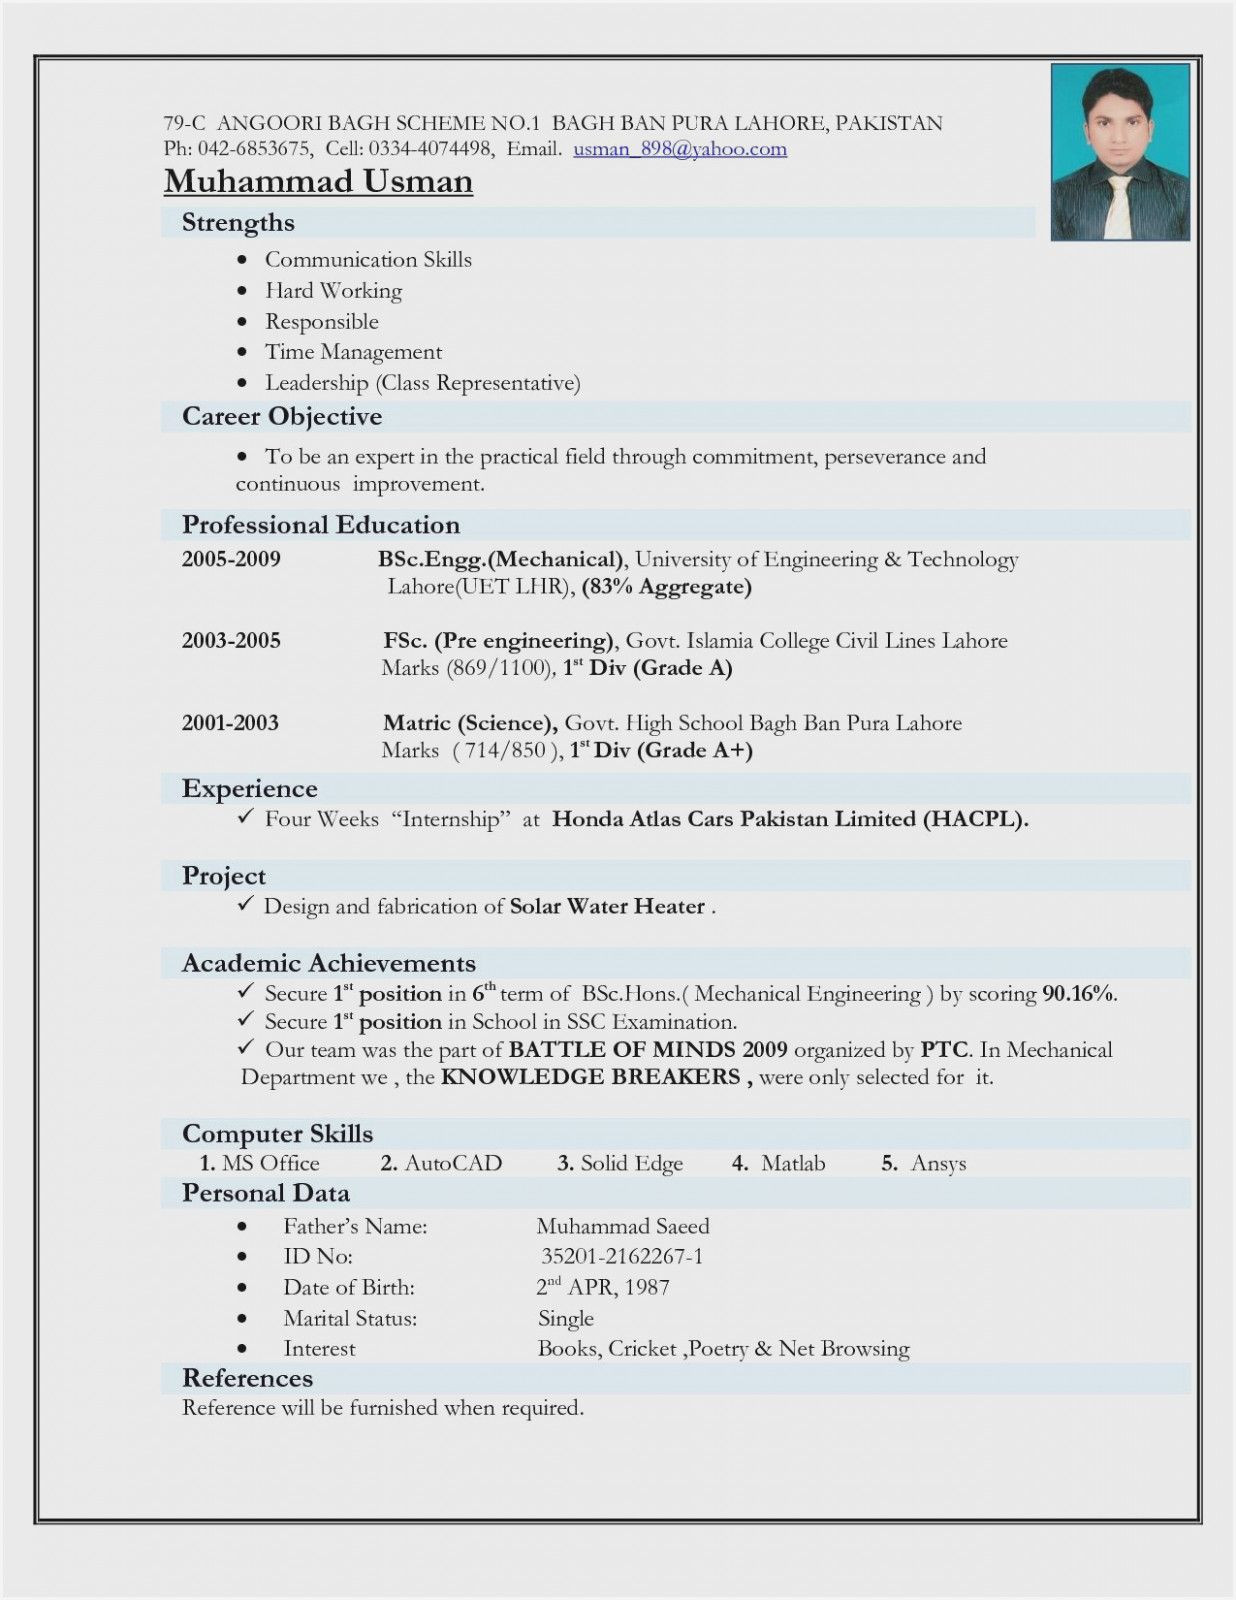 Sample Resume for Fresher Mechanical Engineer 13 Mechanical Engineer Resume Ideas Mechanical Engineer Resume …